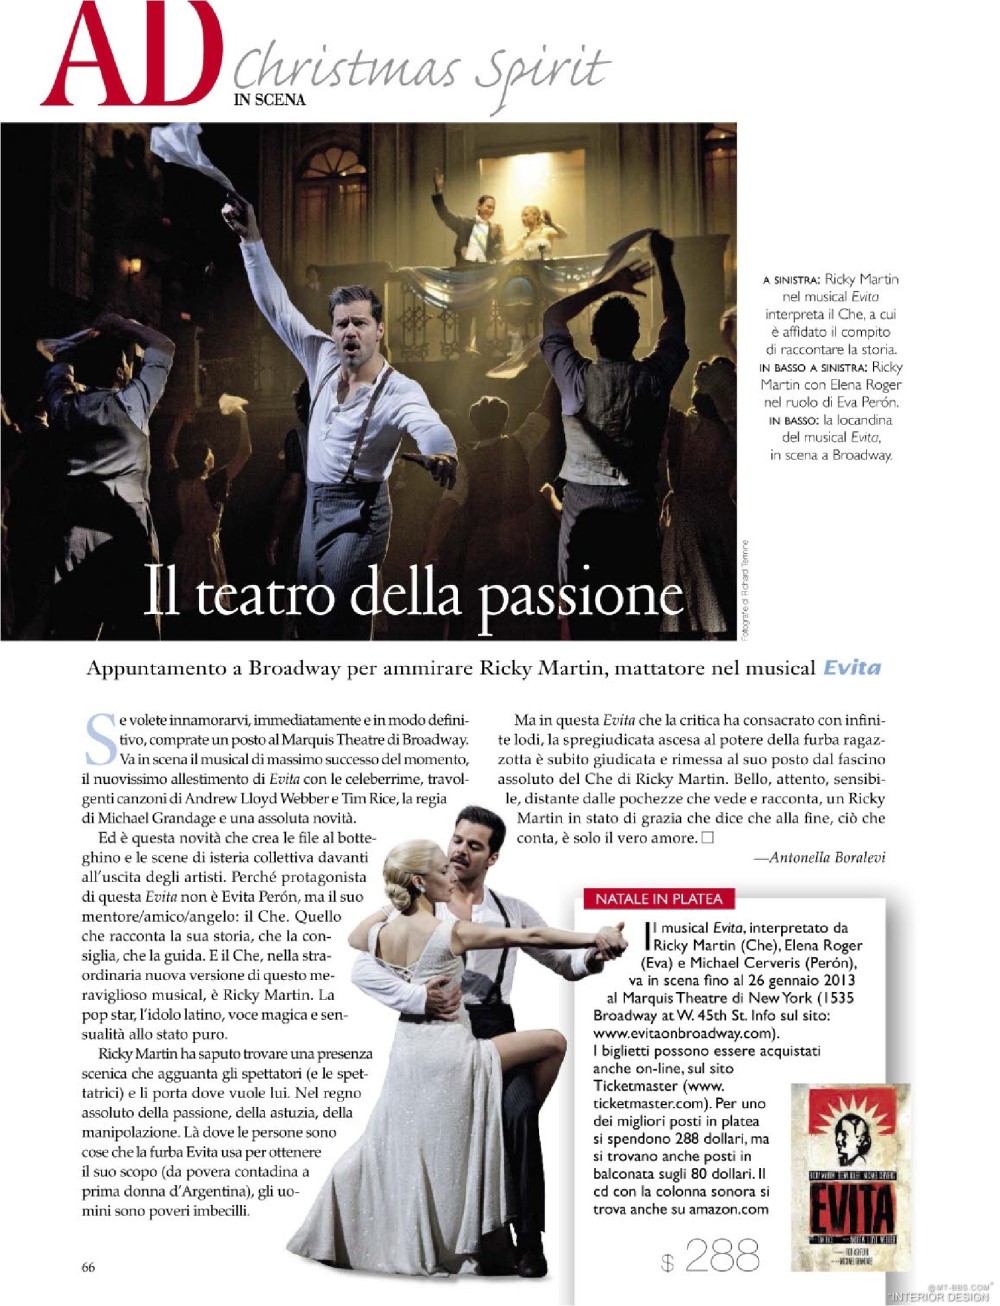 意大利AD 杂志 2012年全年JPG高清版本 全免（上传完毕）_0068.jpg